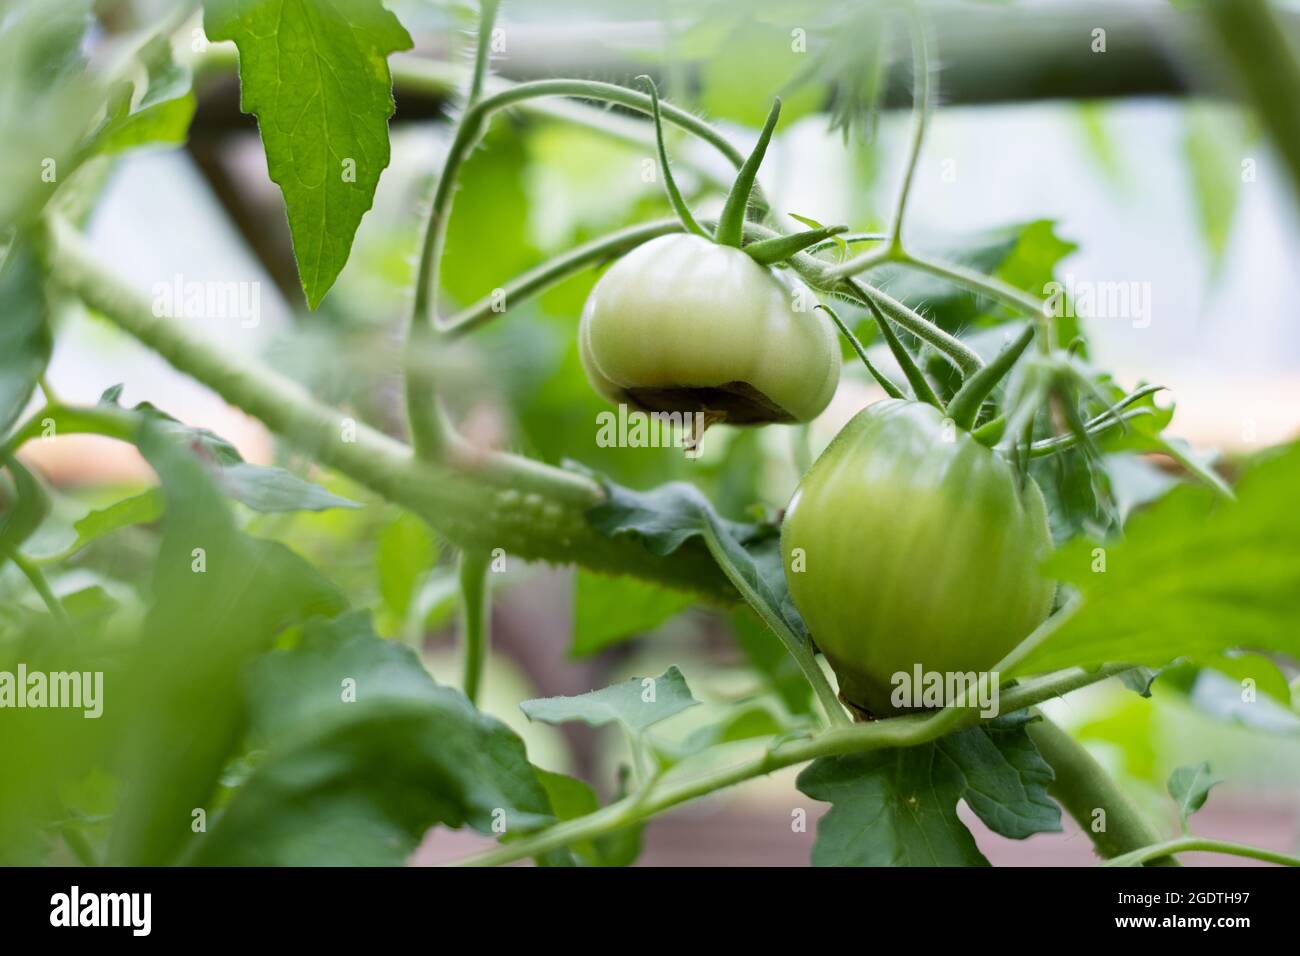 Symptome der Blütenendfäule auf Tomatenfrüchten. Kranke Tomaten. Nicht infektiöser Scheitelpunkt Rot. Stockfoto